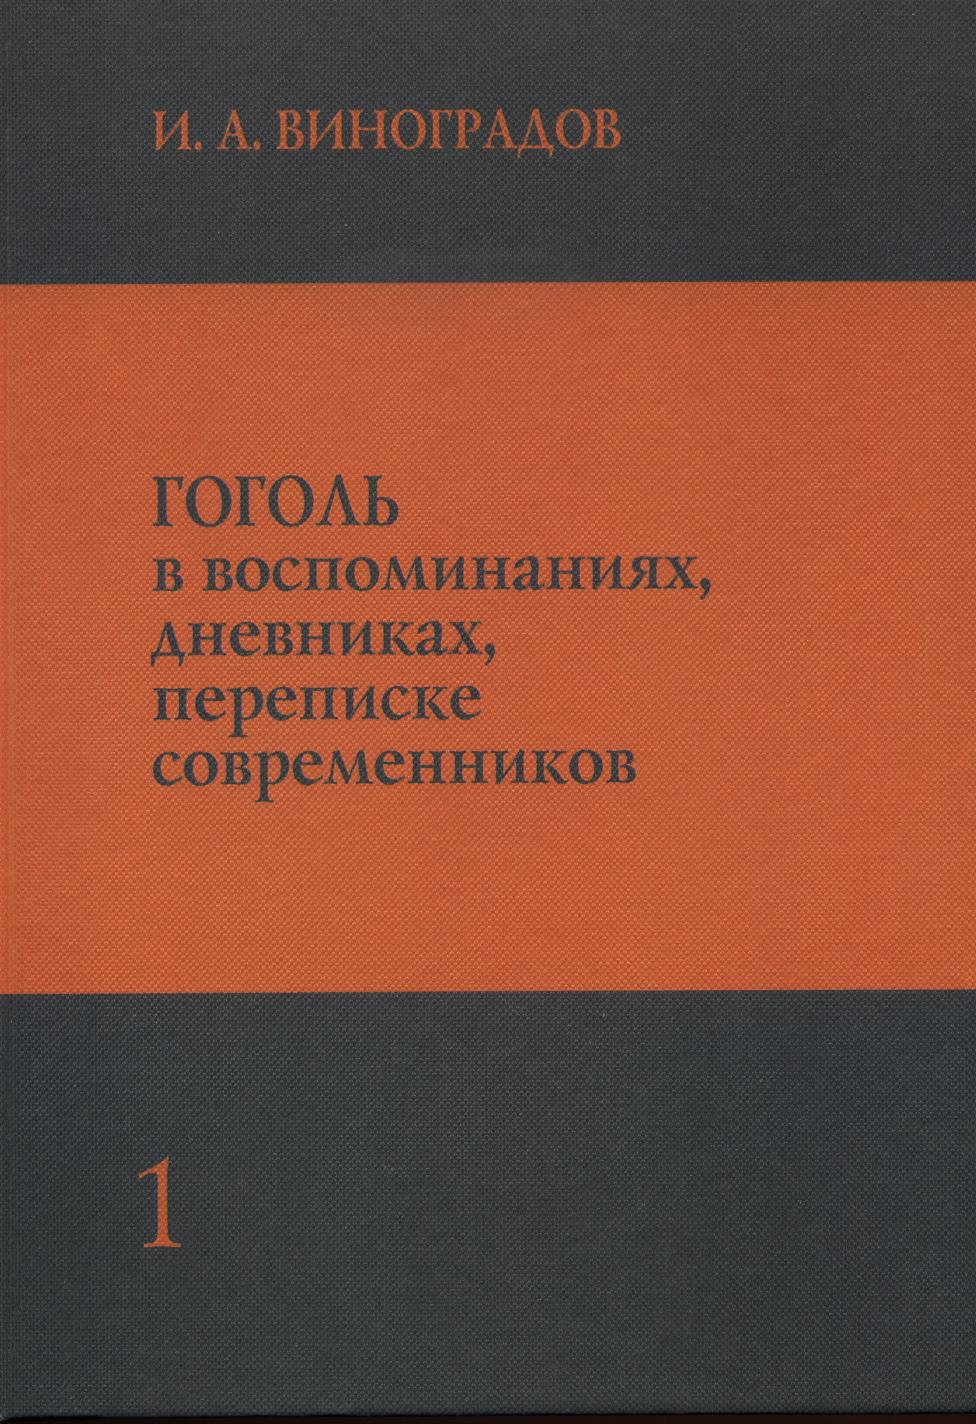 Обложка Гоголь в воспоминания, дневниках, переписке современников. Том первый.